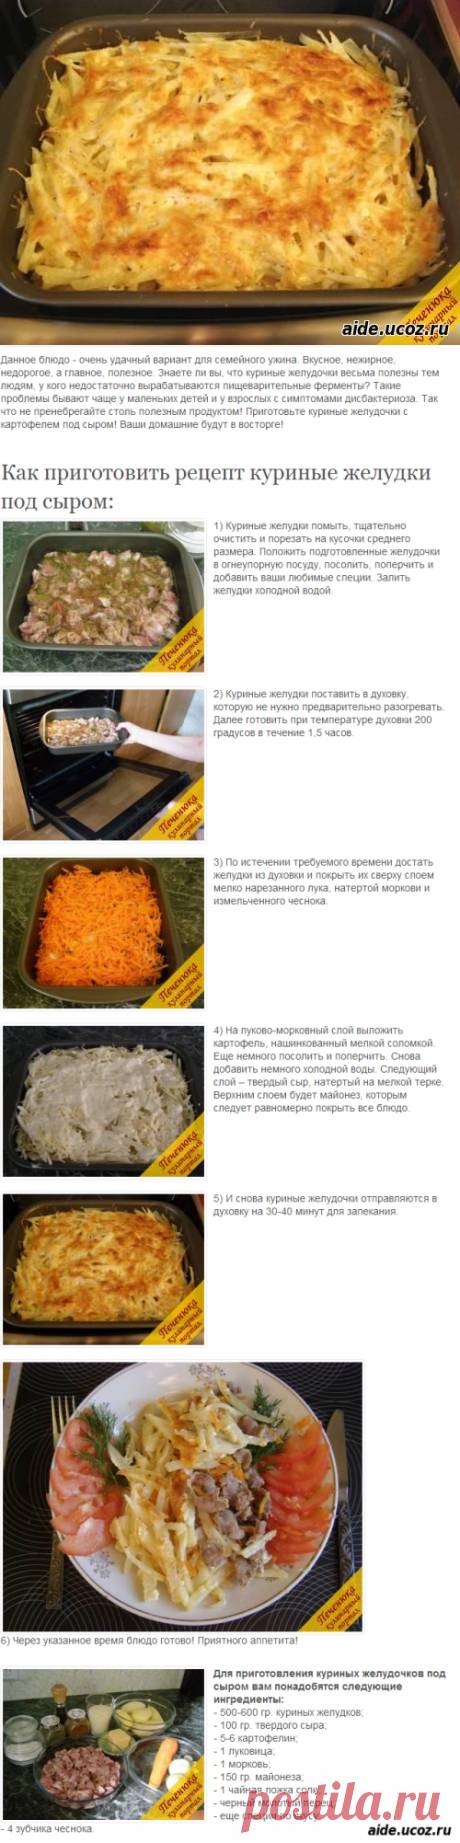 Куриные желудки под сыром (пошаговый рецепт с фото) - рецепты - Кулинария - Каталог файлов - Хобби.